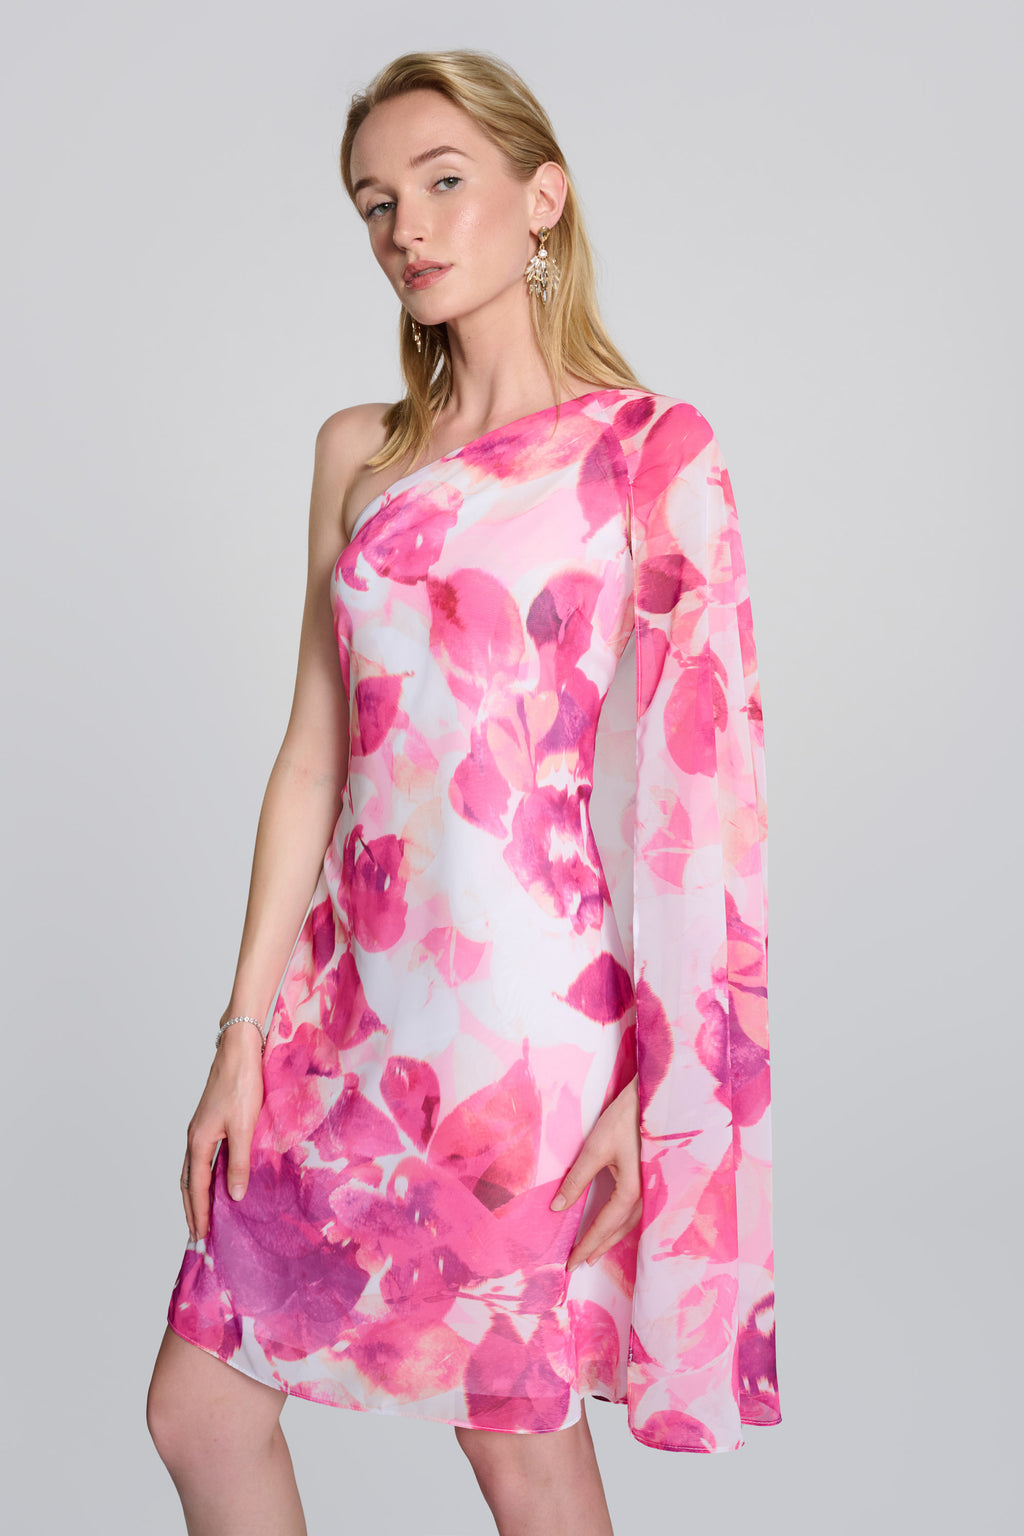 Joseph Ribkoff Vanilla/Multi Floral Print One Shoulder Cape Dress Style 242716